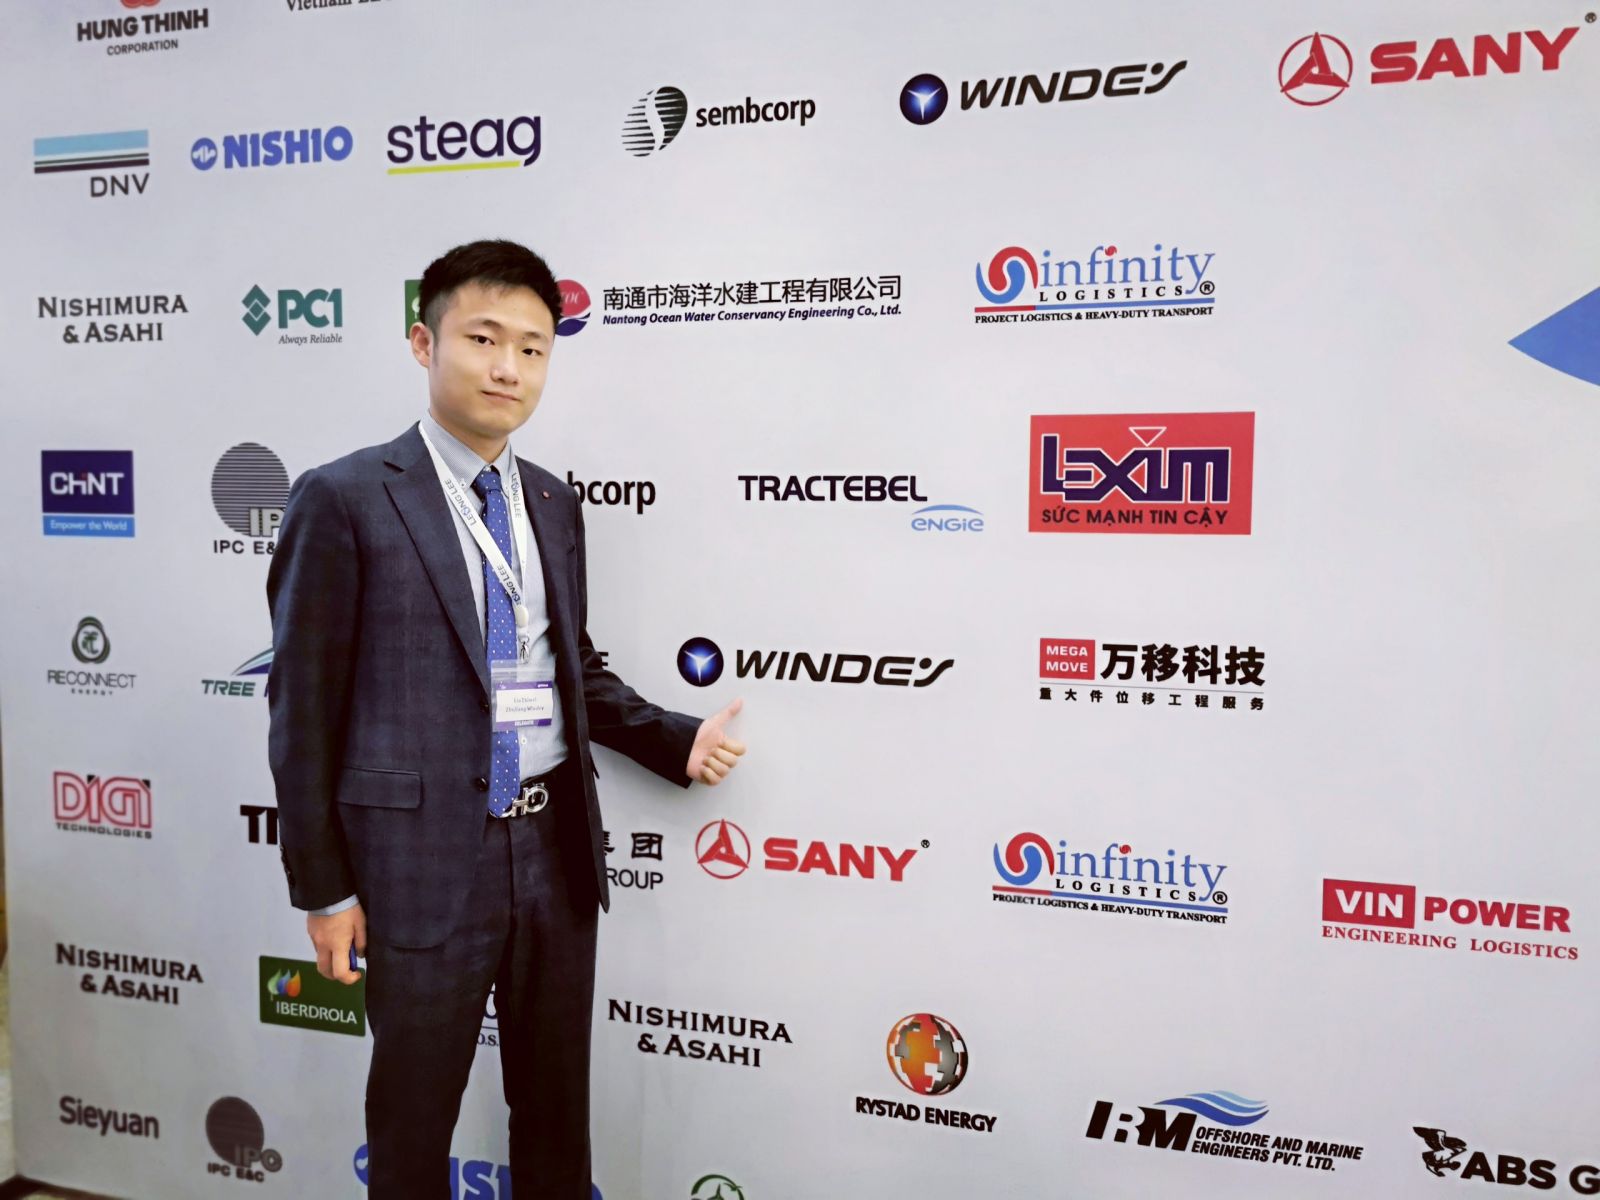 Ông Zhiwei Liu, Giám đốc Marketing khu vực Đông Nam Á Công ty TNHH Windey Chiết Giang tại Hội nghị thượng đỉnh Điện gió trên bờ và ngoài khơi lần thứ 5